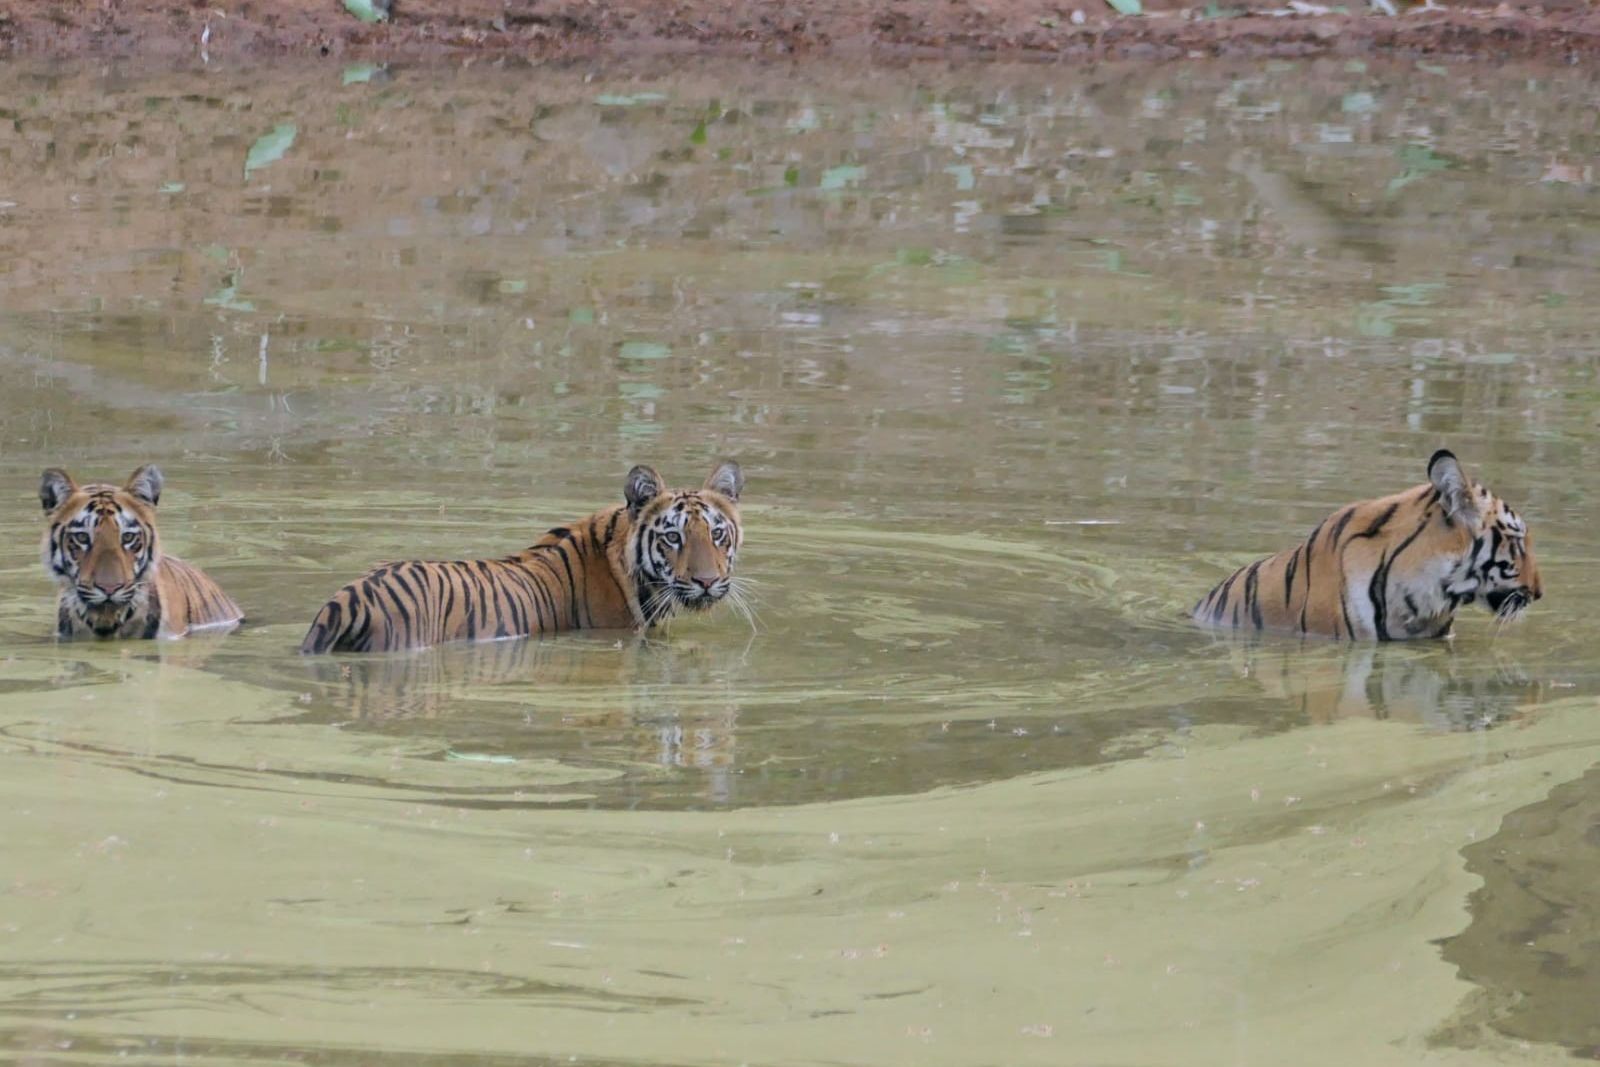 In Indien im Nationalpark erfrischen sich drei Tiger im Wasser